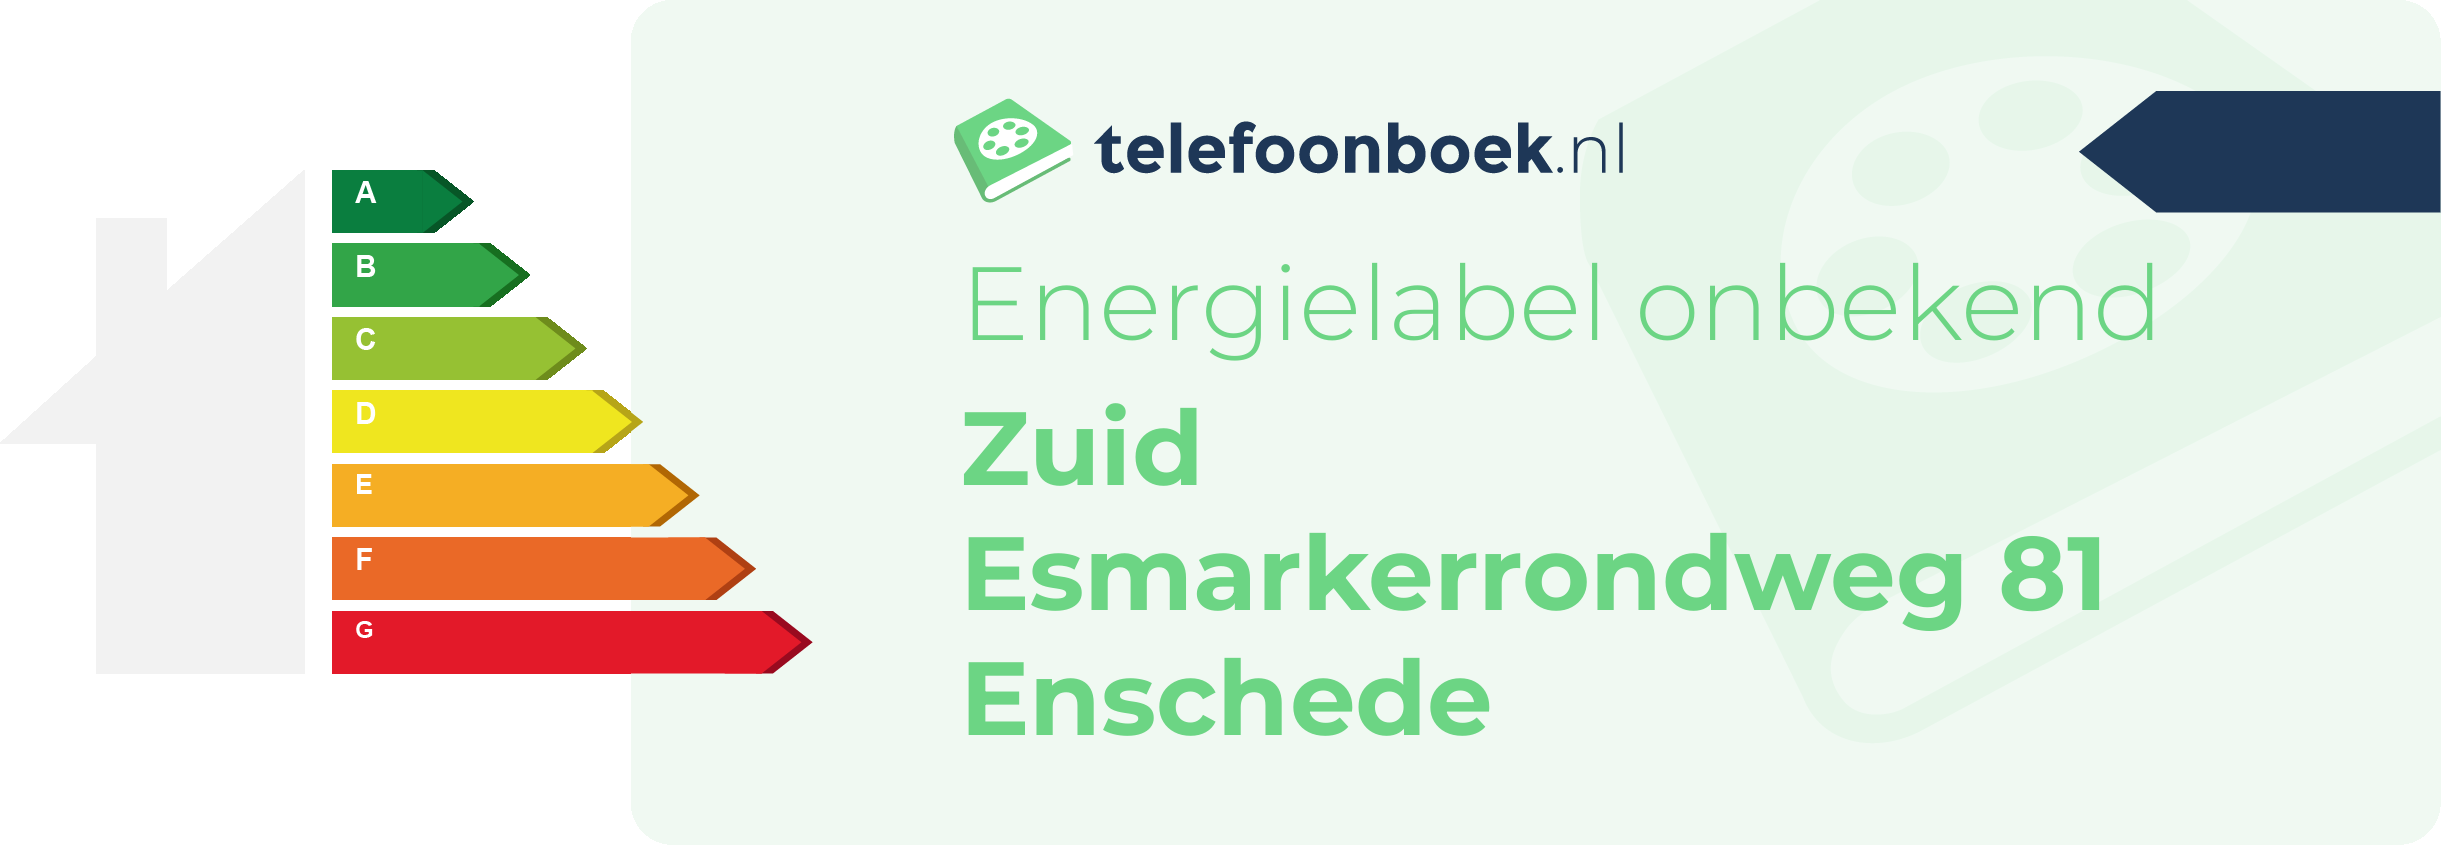 Energielabel Zuid Esmarkerrondweg 81 Enschede